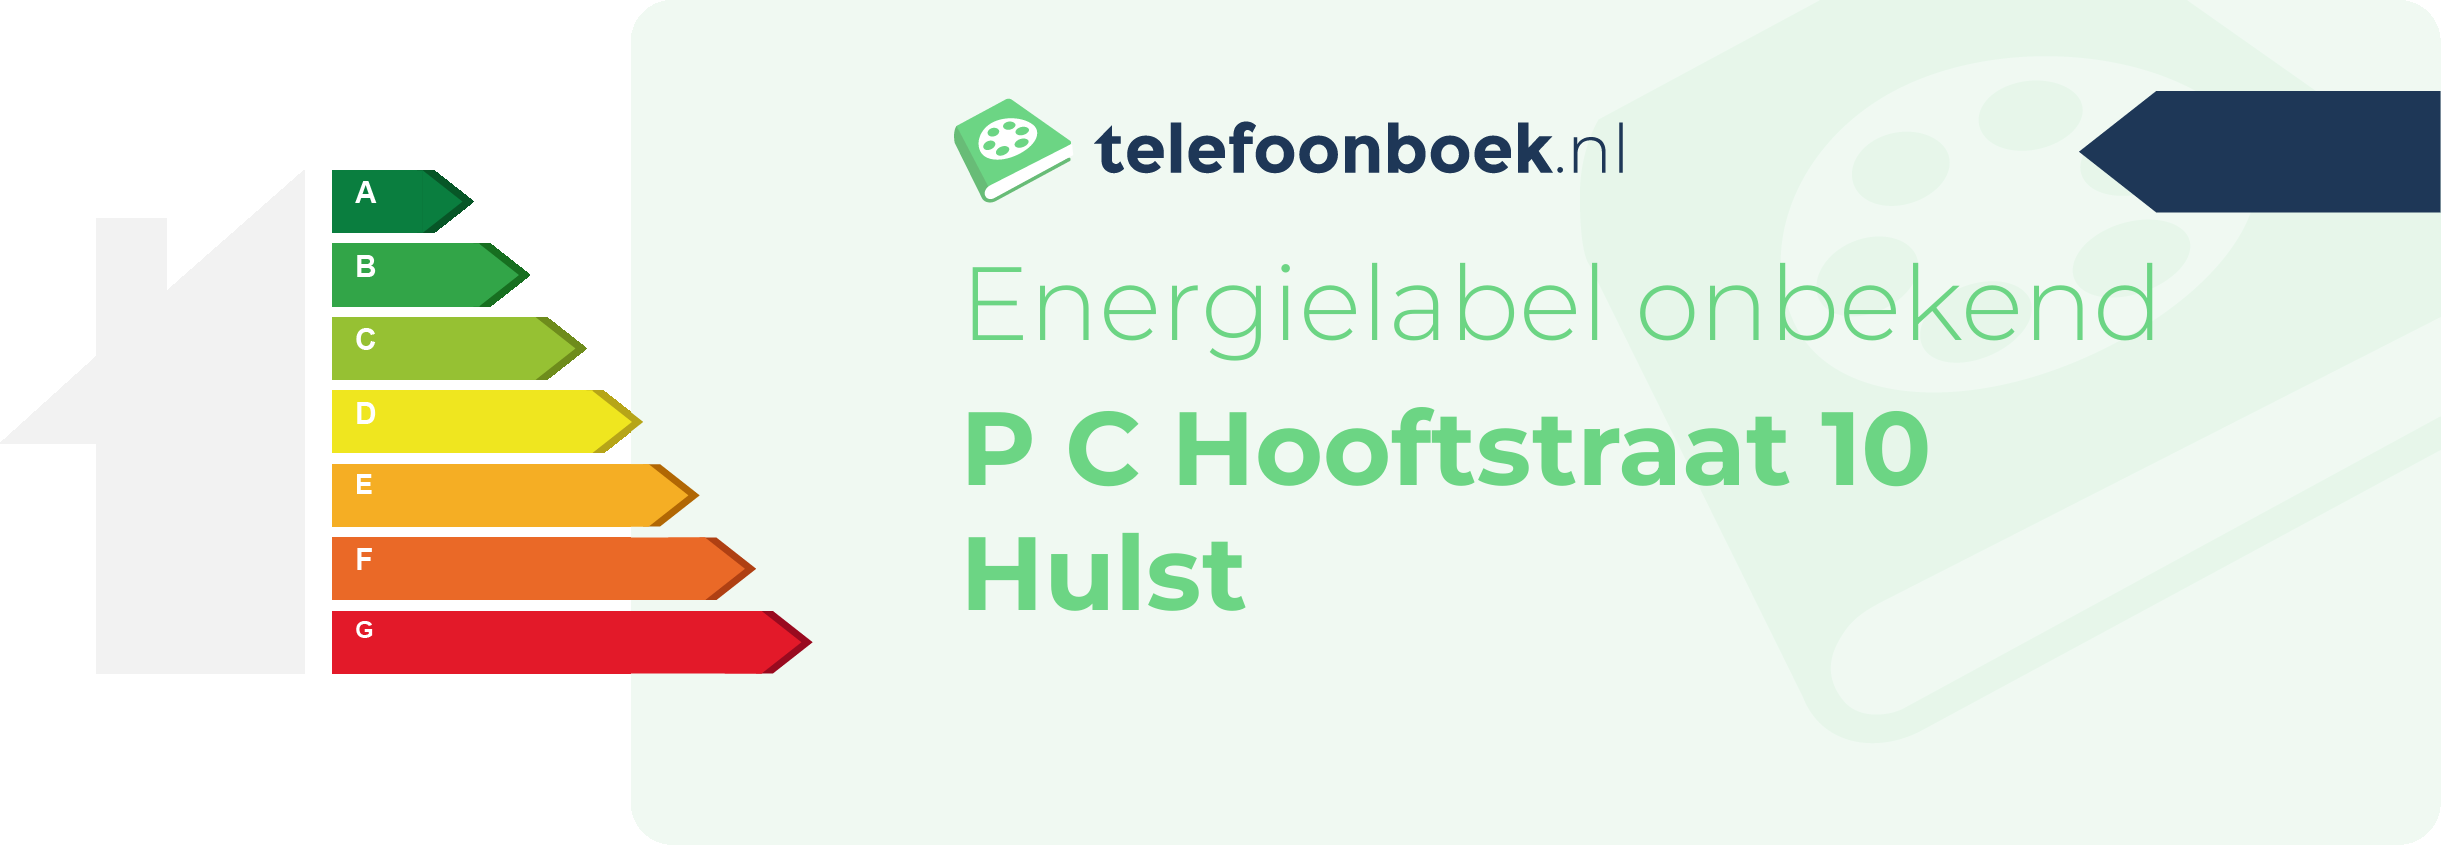 Energielabel P C Hooftstraat 10 Hulst